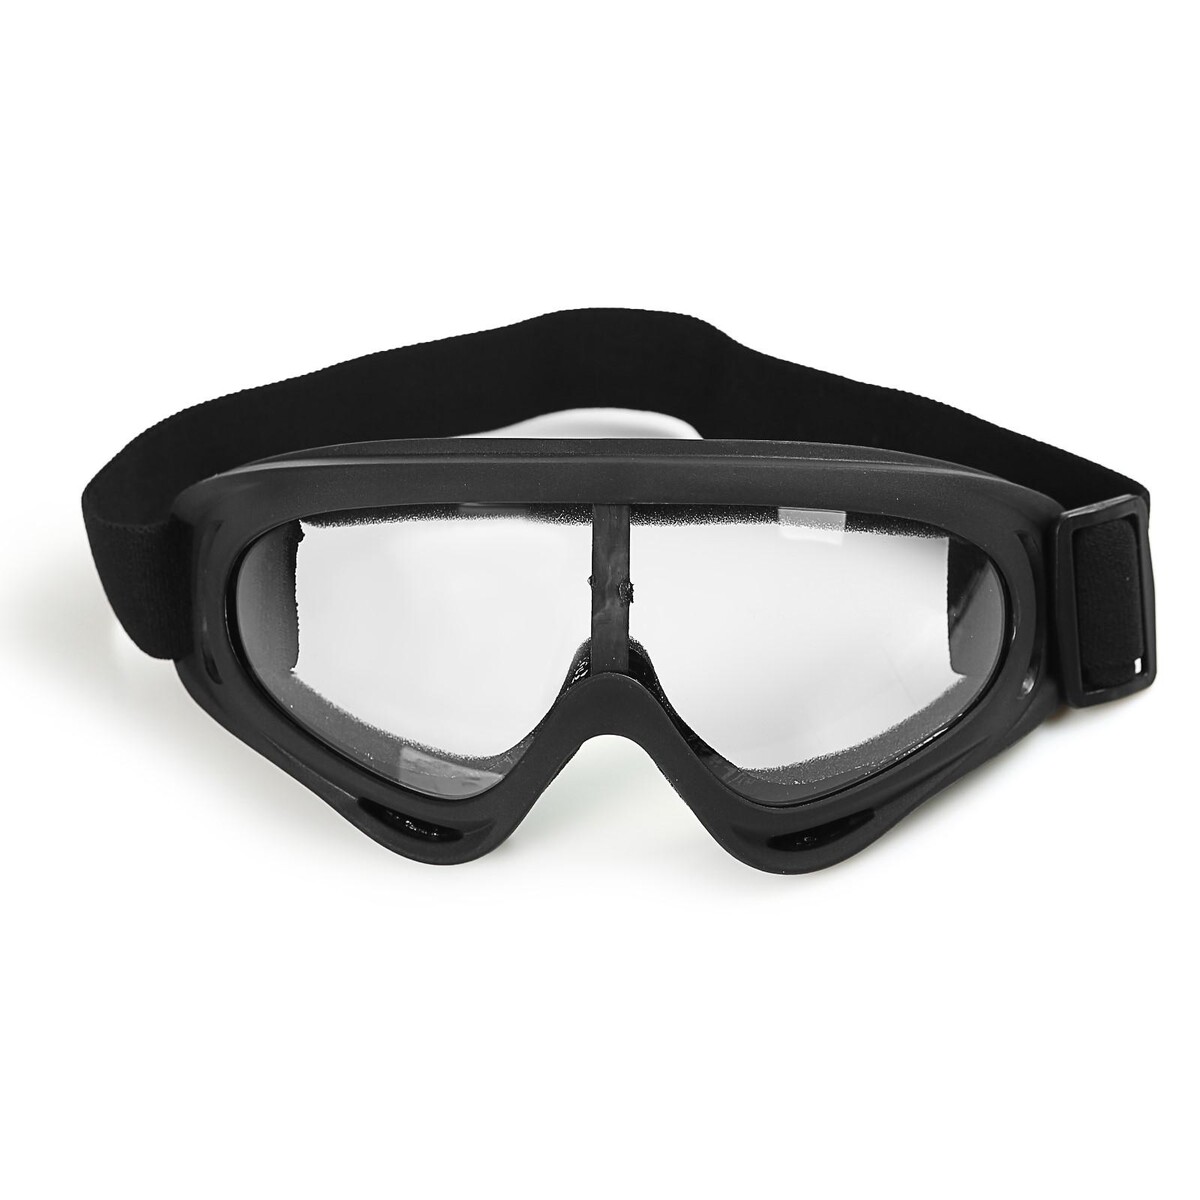 Очки для езды на мототехнике, стекло прозрачное, цвет черный очки маска для езды на мототехнике стекло прозрачное